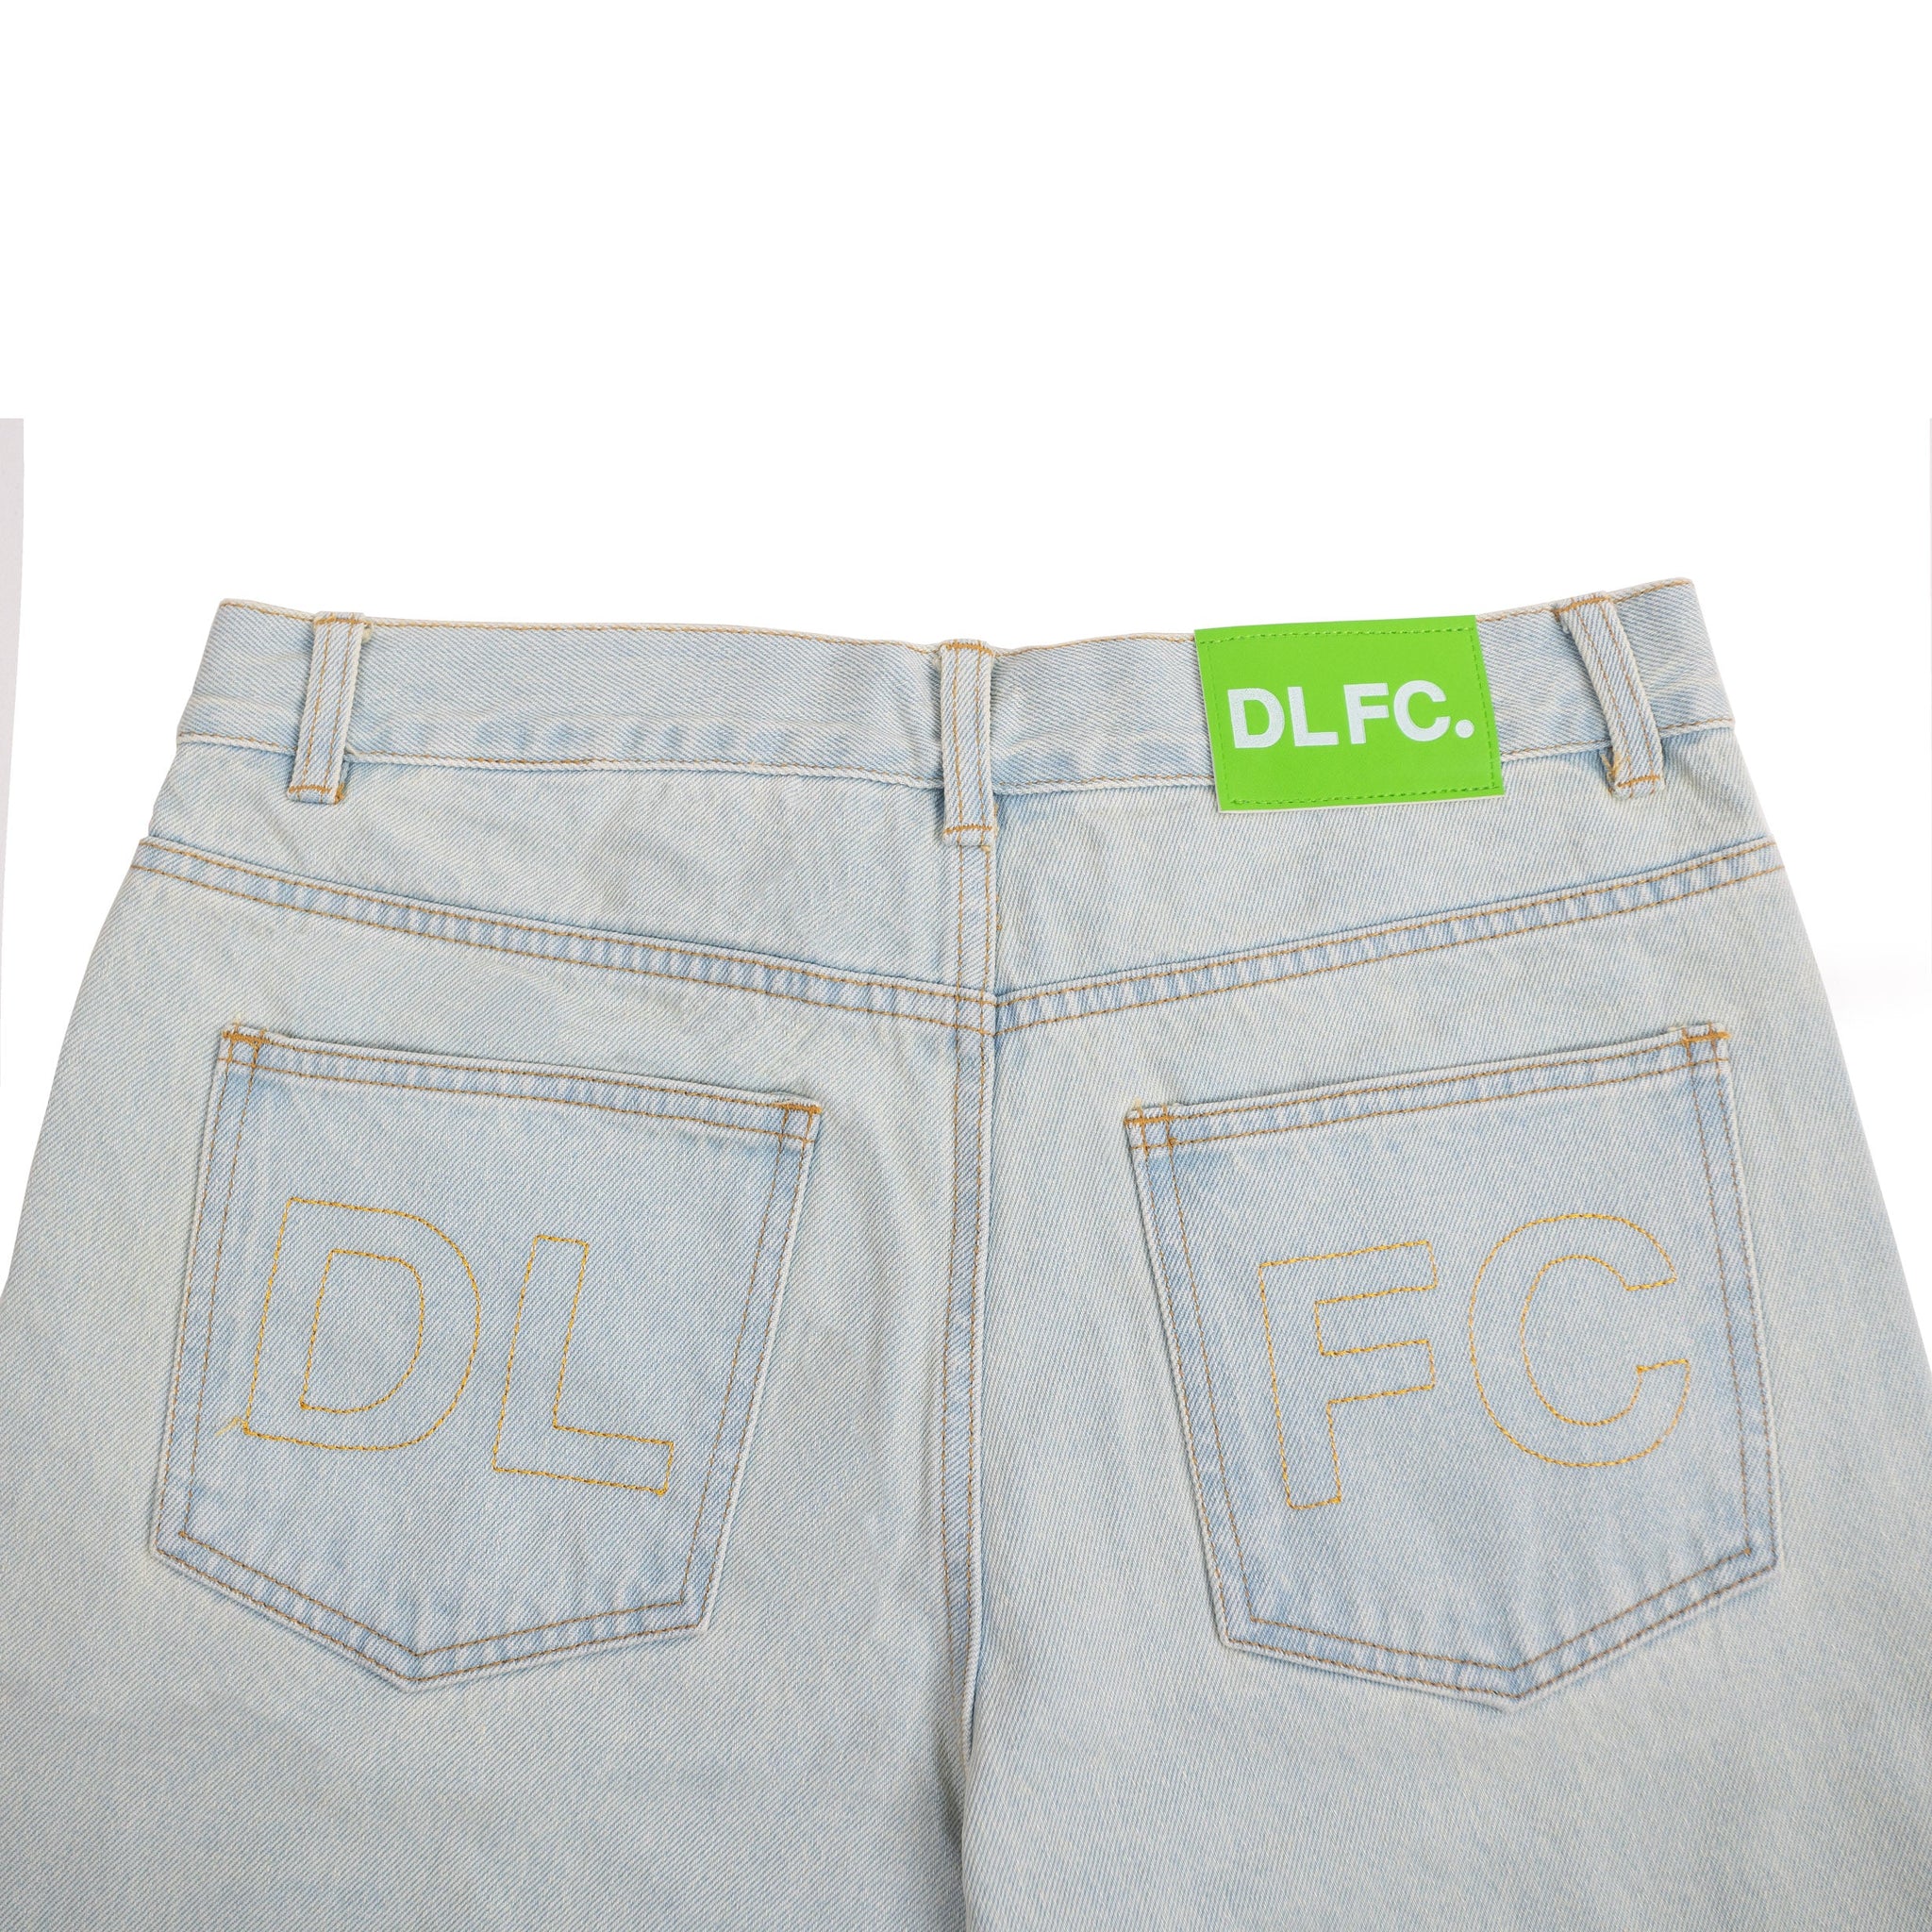 DLFC Jeans - Dellafuente F.C.